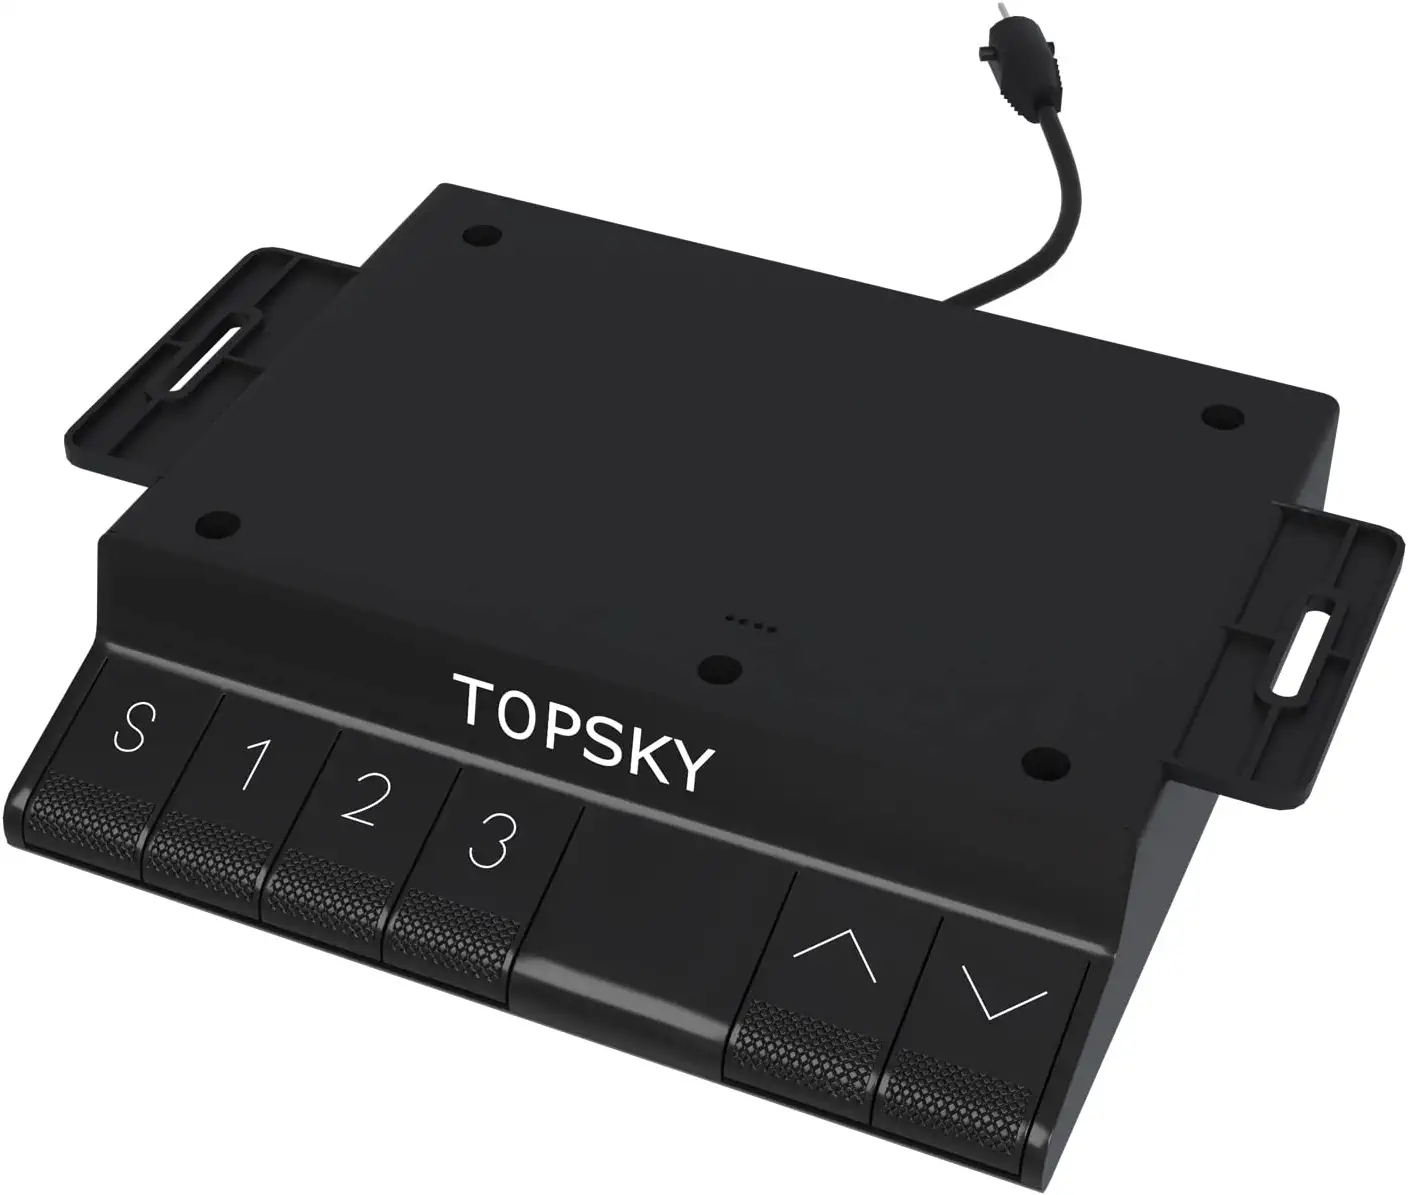 TOPSKY Standing Desk Handset for DF02.01 New